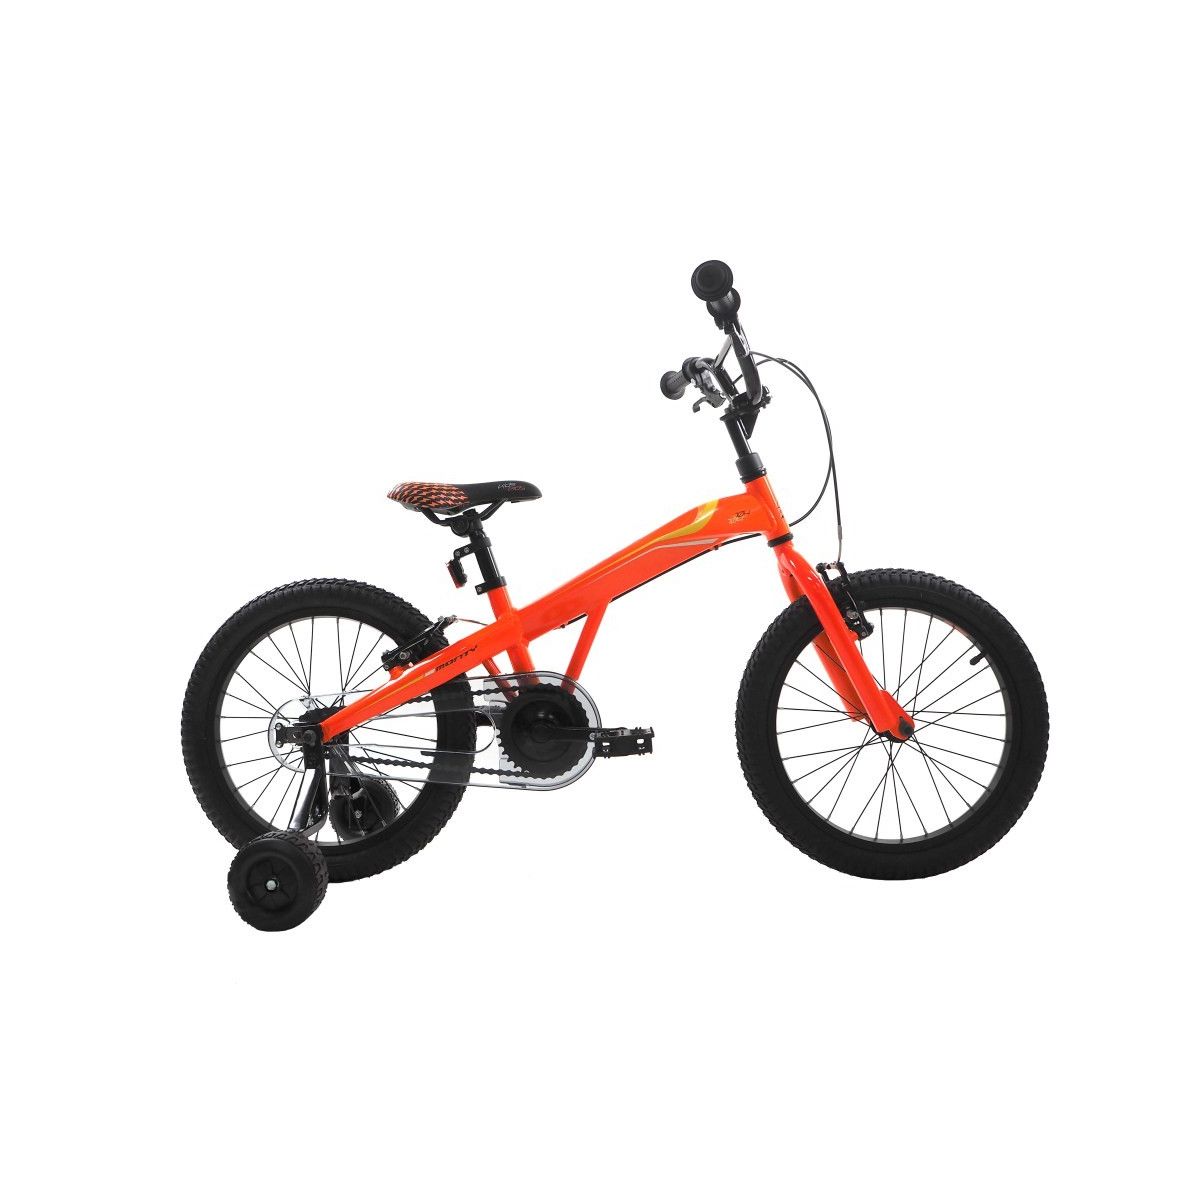 Bicicleta niño Monty 104 (4 a 6 años) color naranja | bicicleta infantil | the bike village